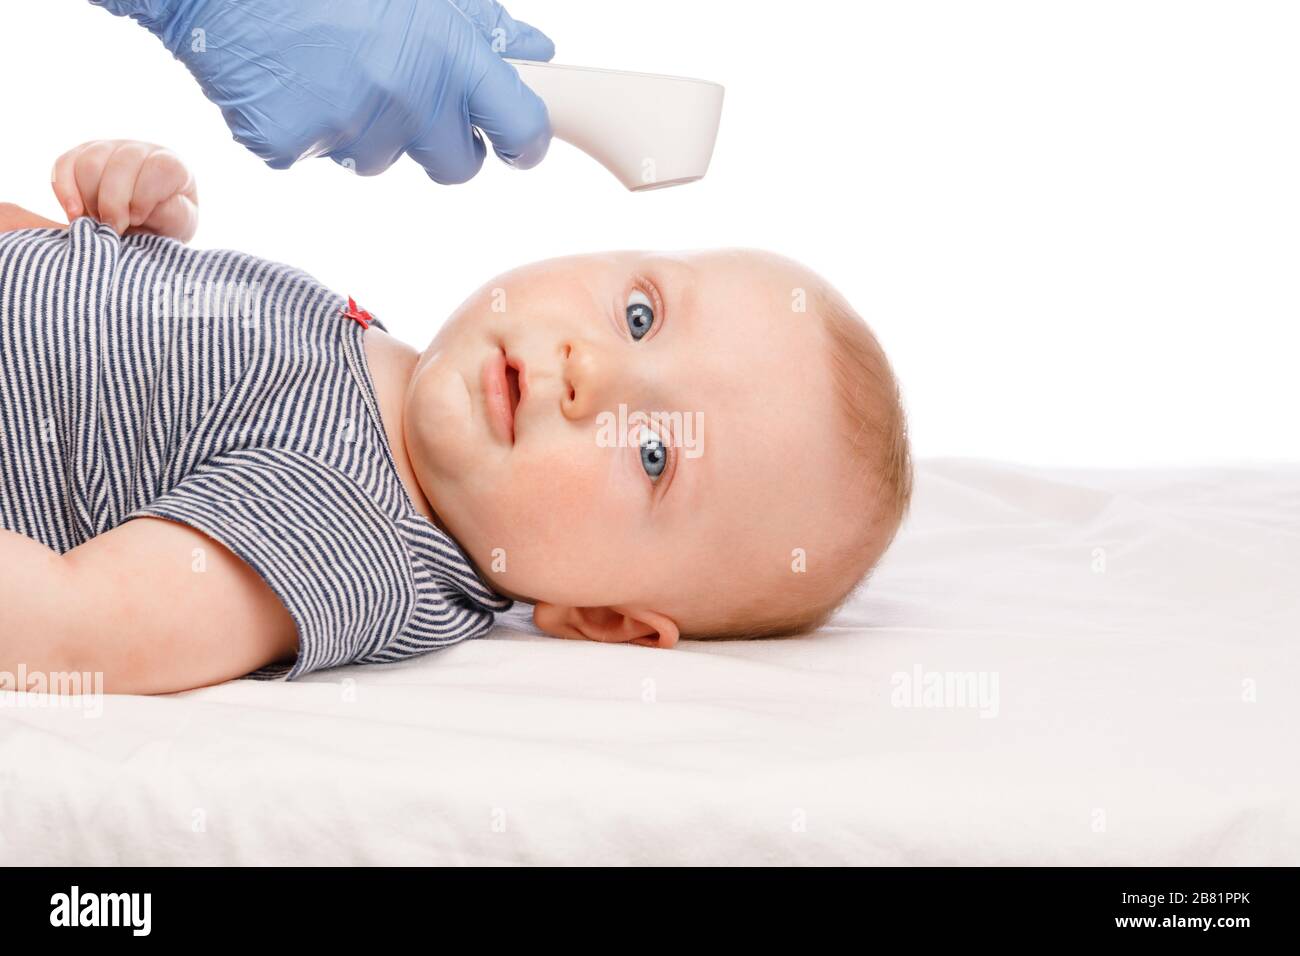 Kinderarzt oder Krankenschwester überprüft die Körpertemperatur des Jungen mithilfe eines Infrarot-Stirnthermometers (Thermometerpistole) auf das Symptom einer Krankheit Stockfoto